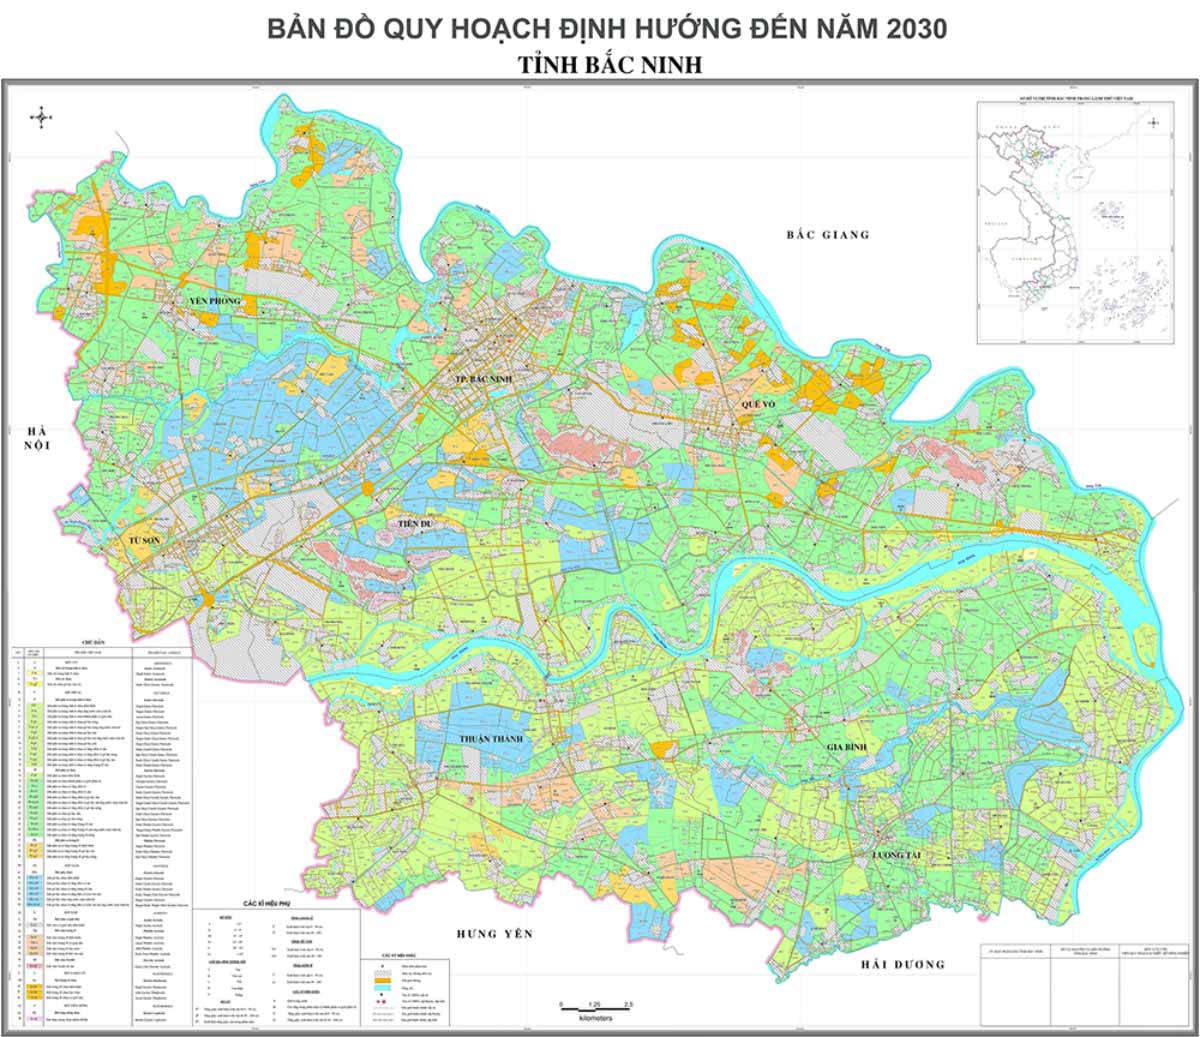 ban-do-quy-hoach-bac-ninh-den-nam-2030